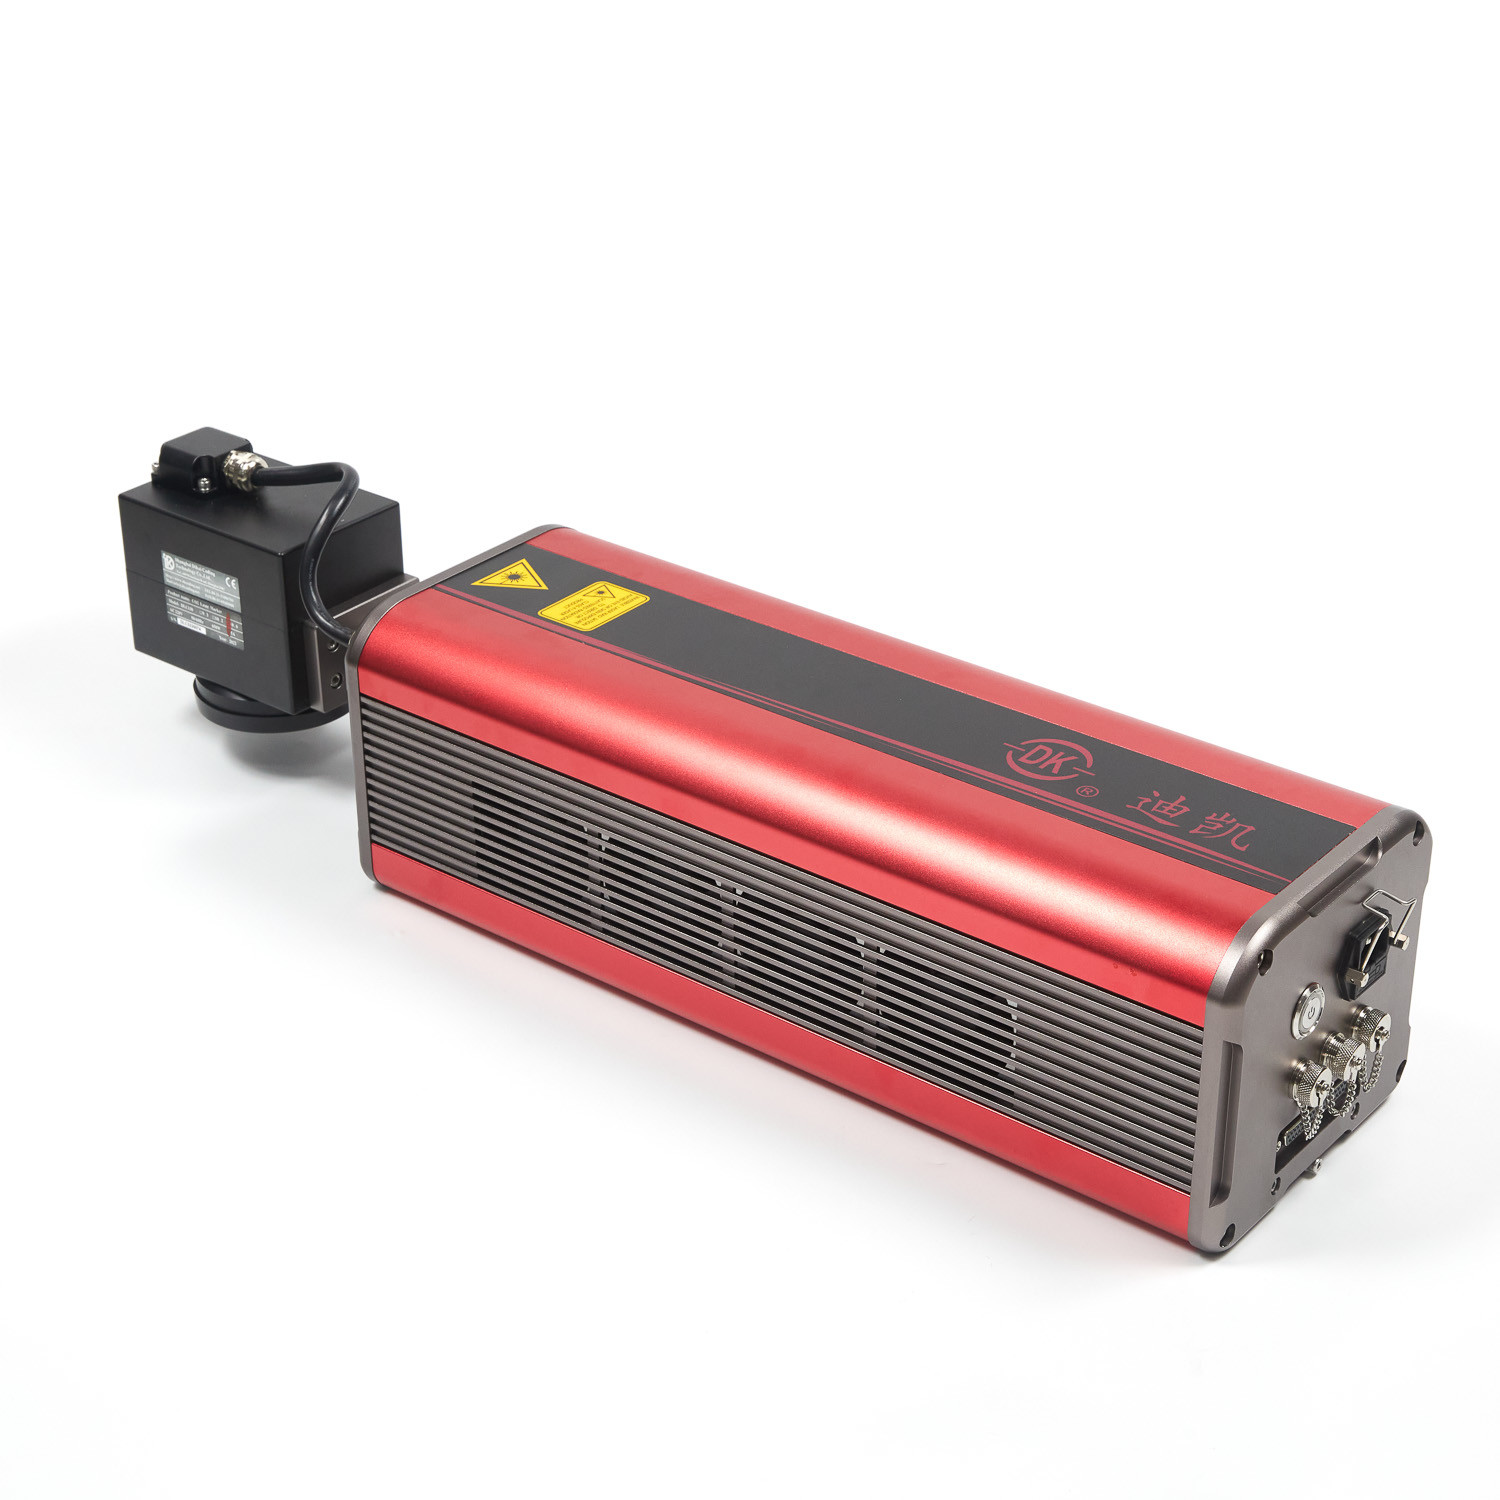 240V 50W CO2 Laser Marking Machine Engraver 300 M/Min For Metal